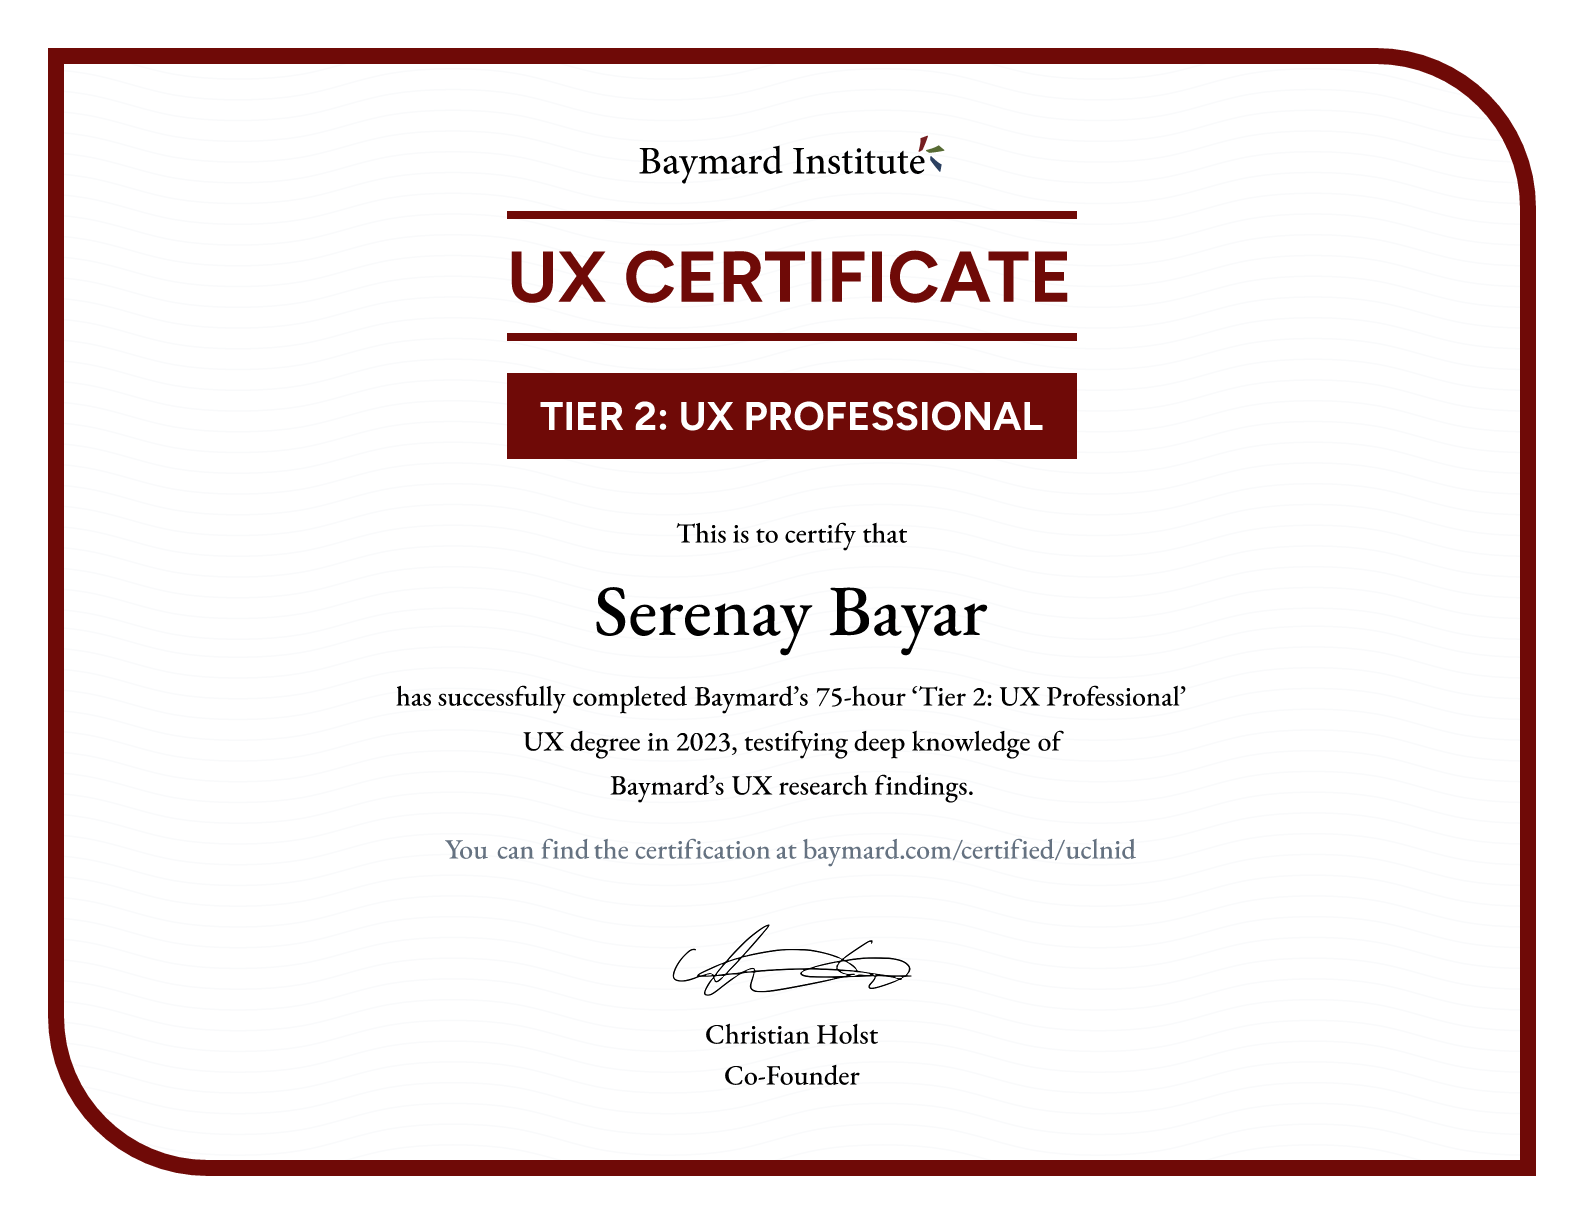 Serenay Bayar’s certificate